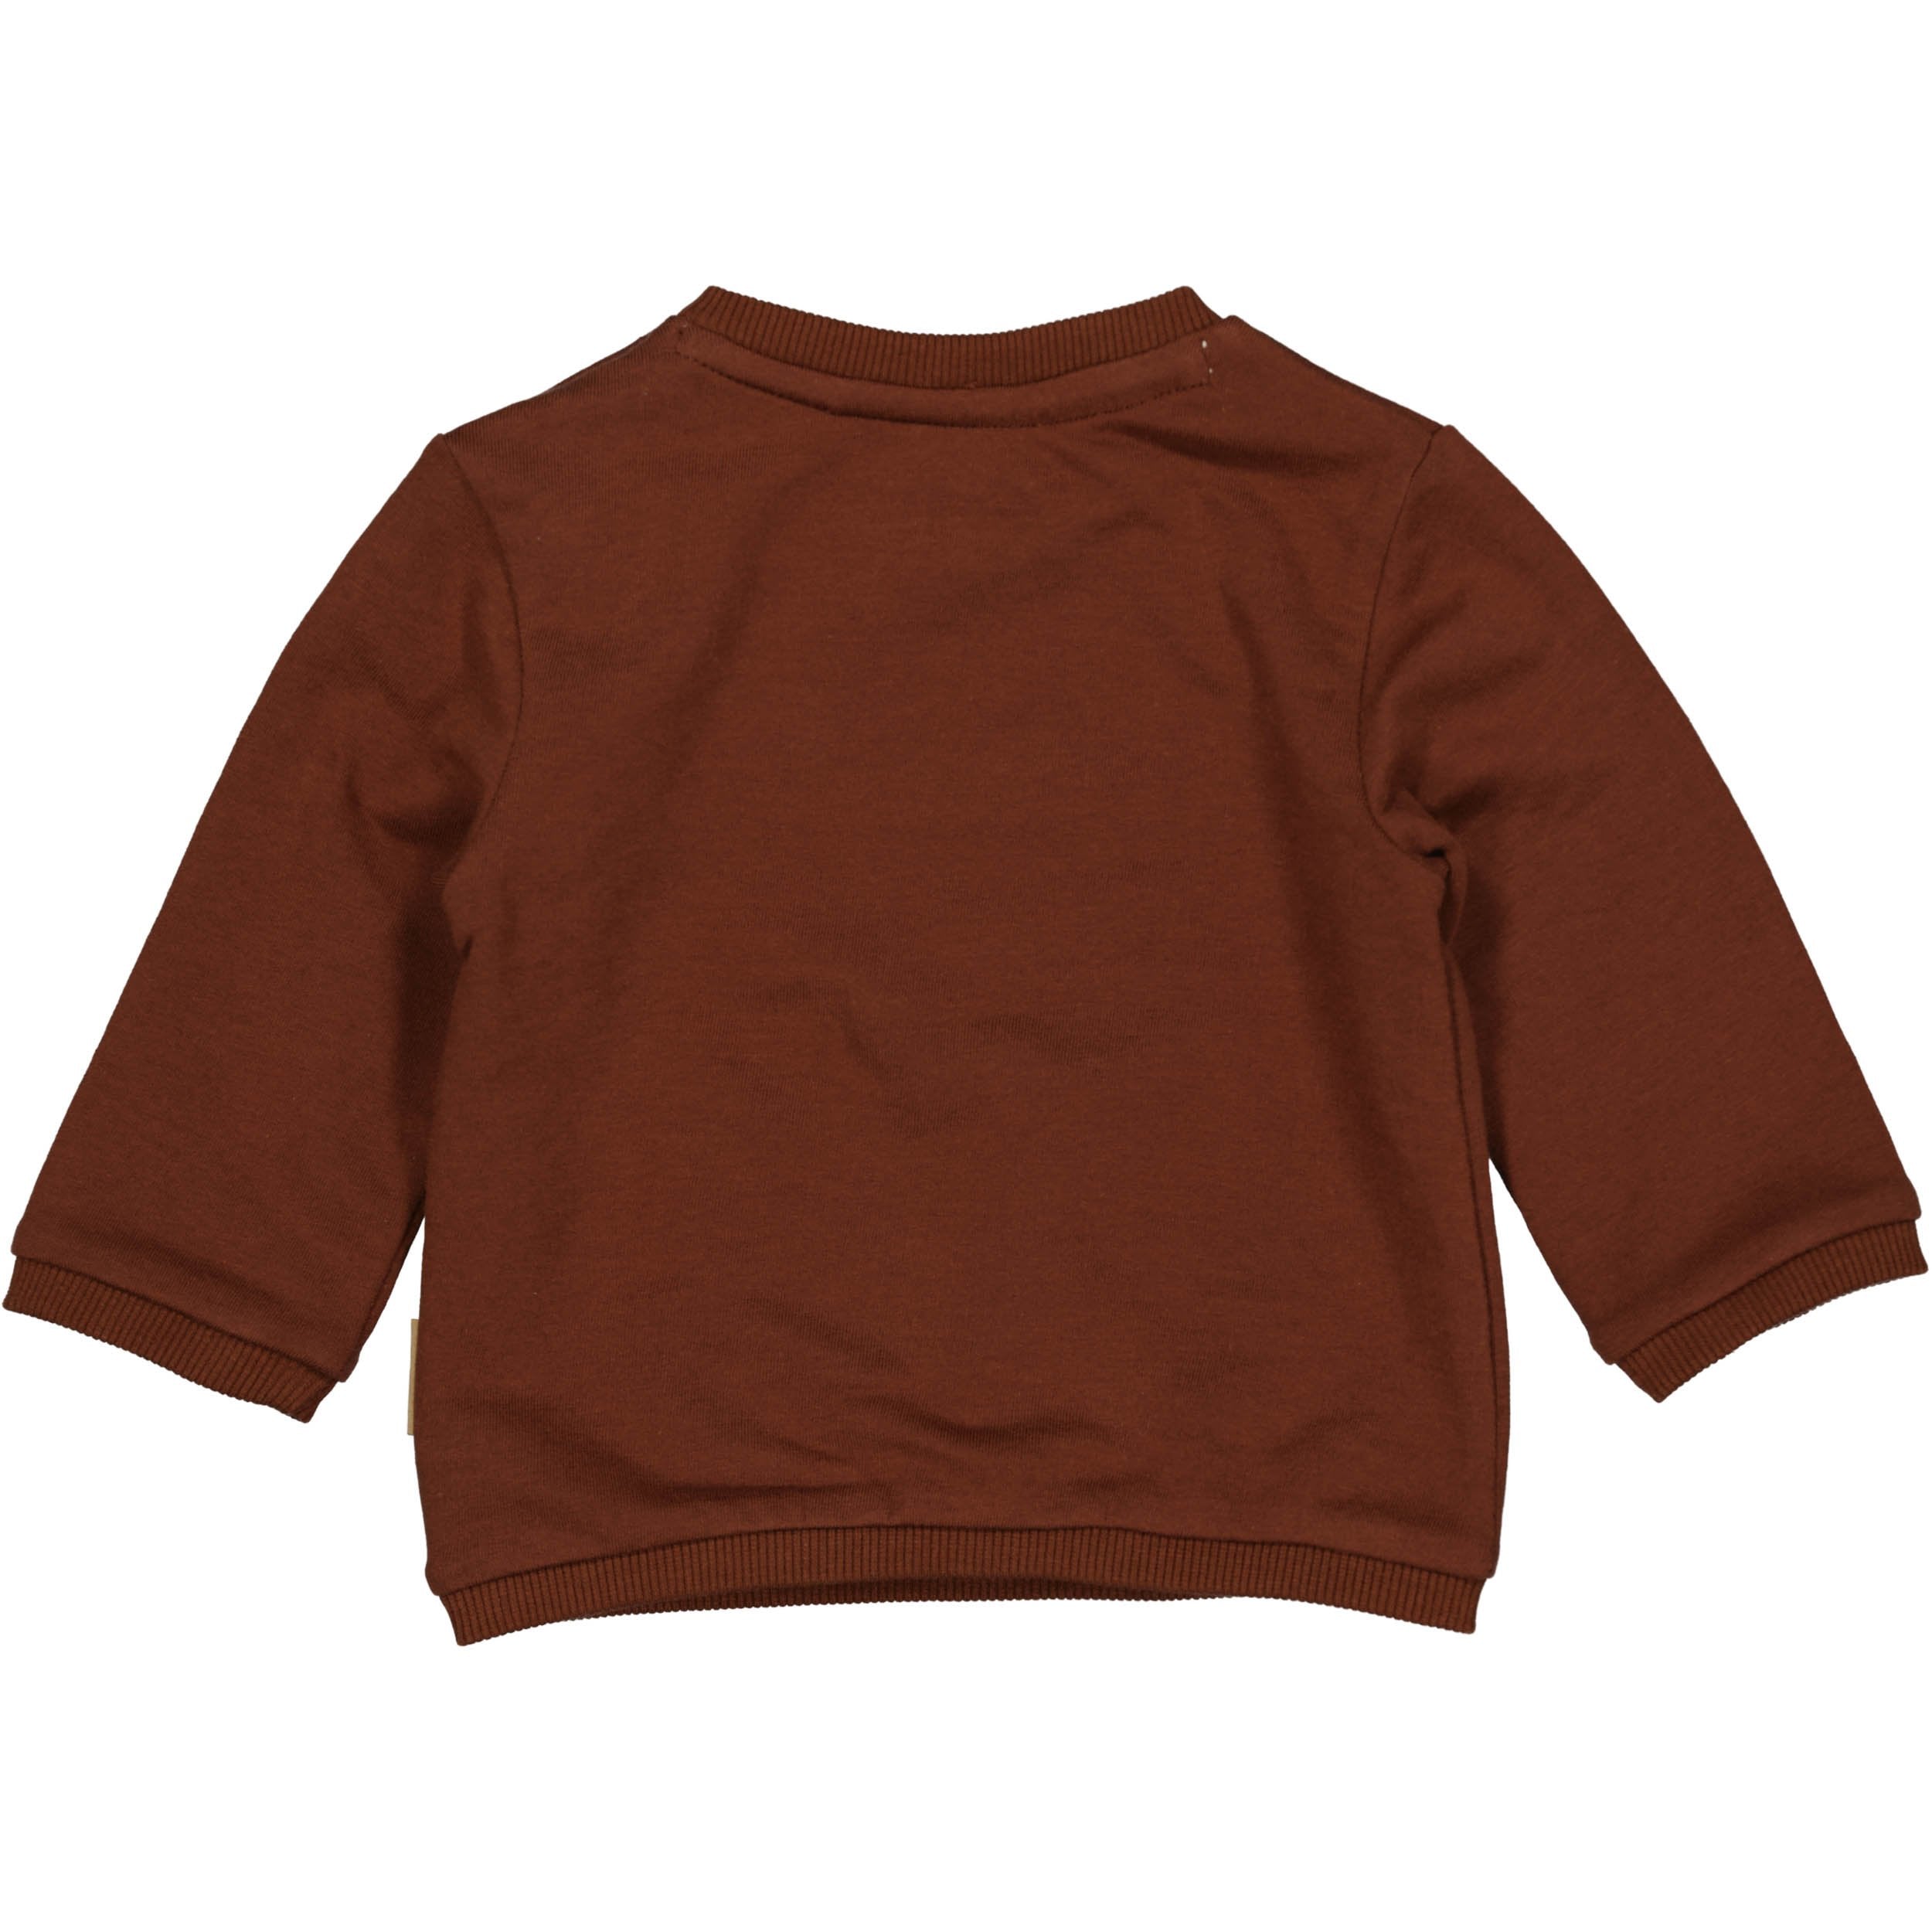 Jongens Sweater MARK NBW21 van Quapi Newborn in de kleur Brown Choco in maat 68.